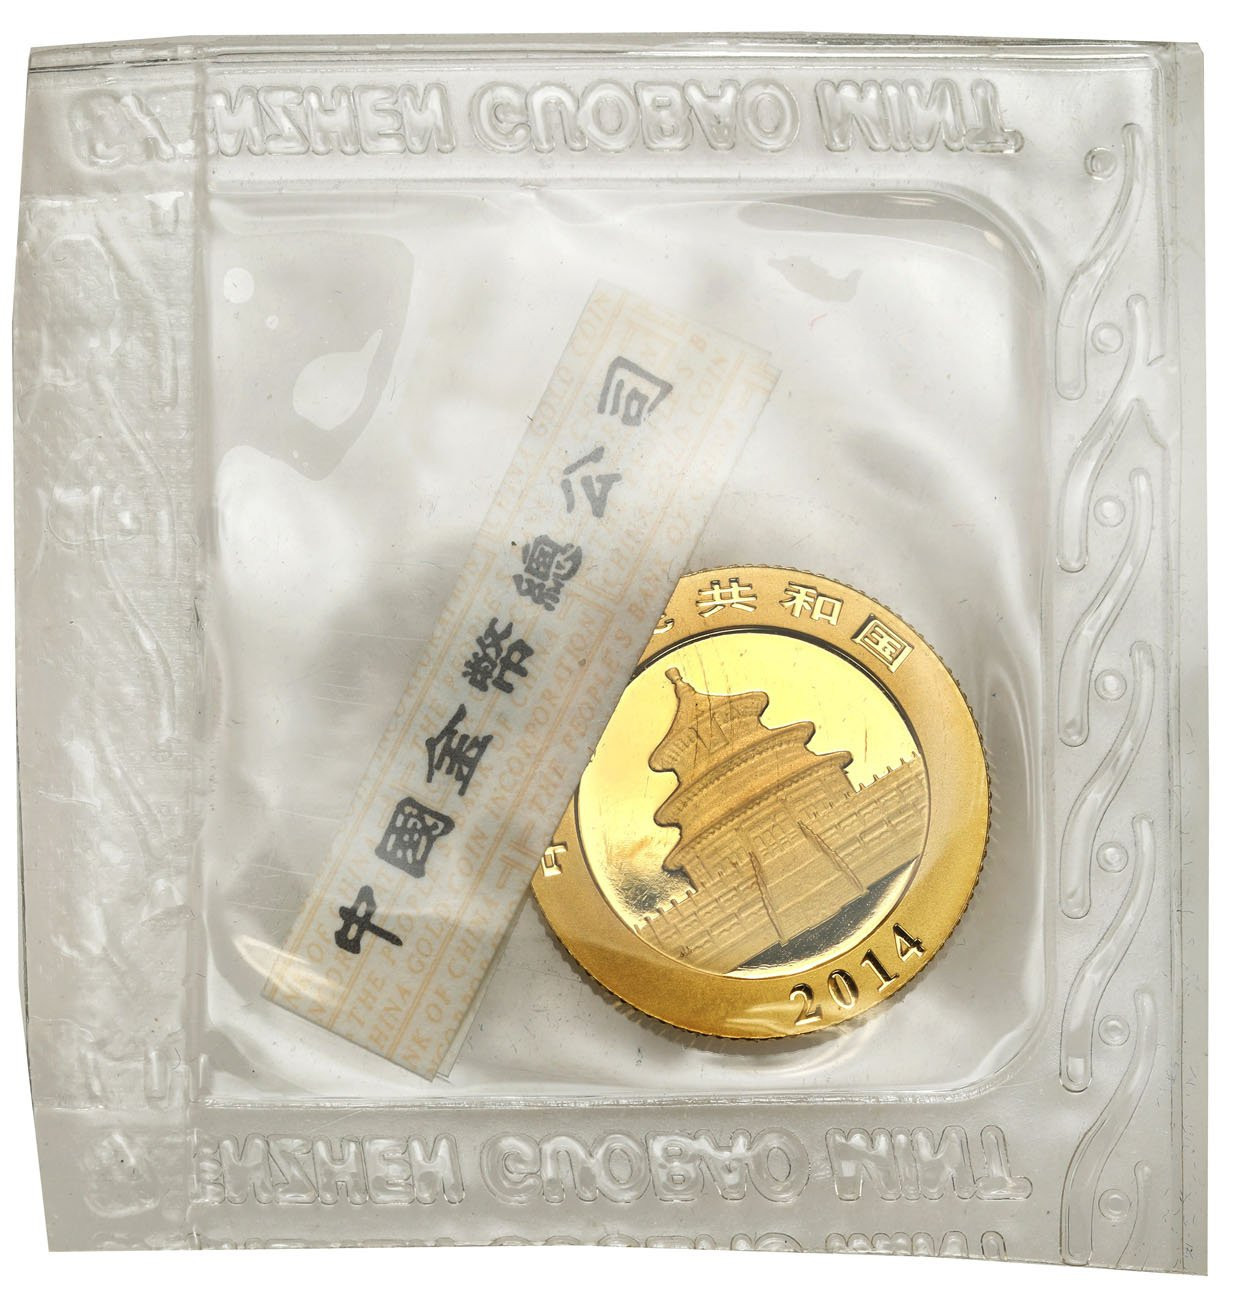 Chiny 50 yuan 2014 Panda - 1/10 uncji złota